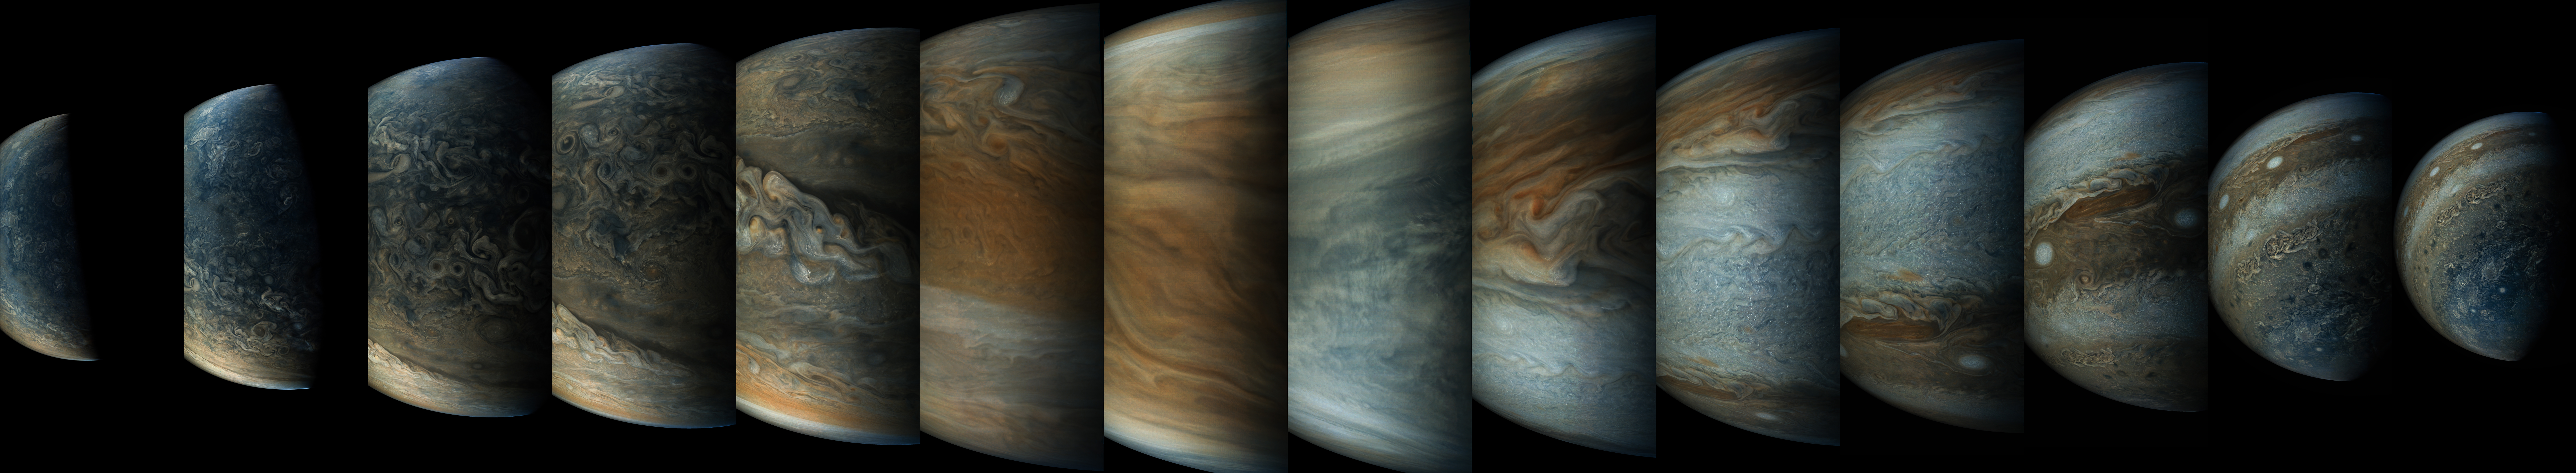 La nave Juno enviada por la NASA descubre grandes tormentas y huracanes en Júpiter